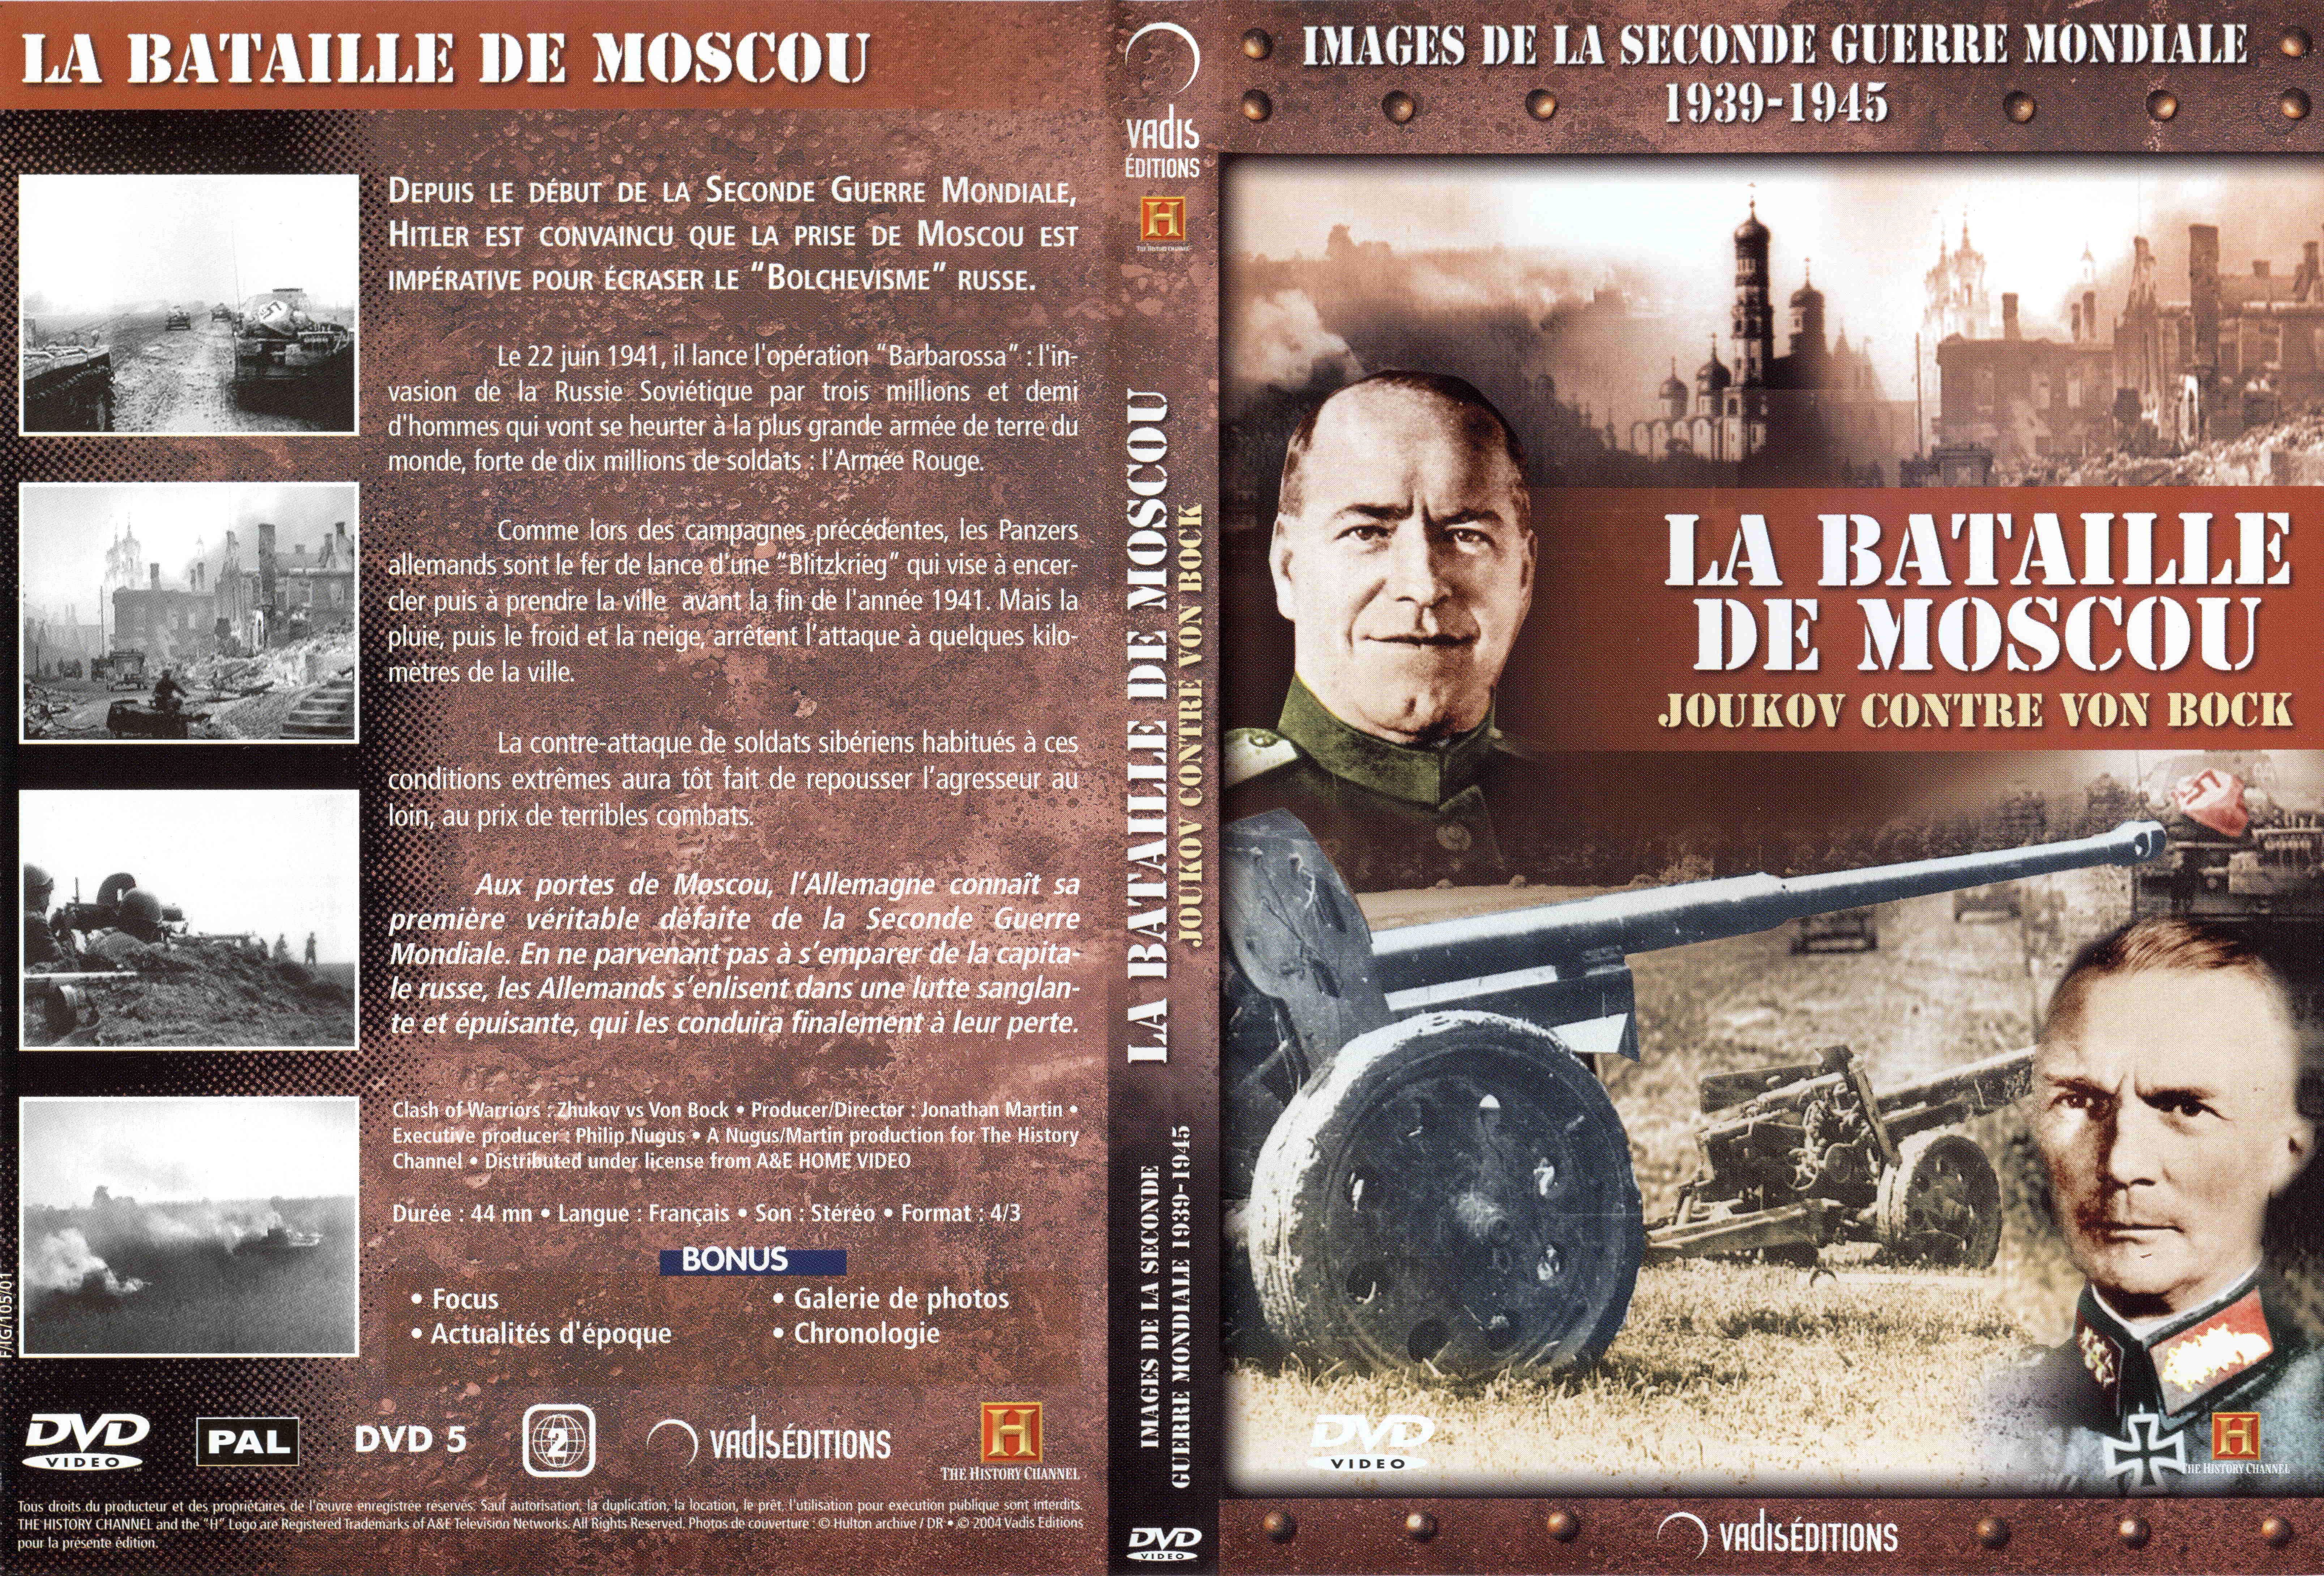 Jaquette DVD Images de la seconde guerre mondiale - La bataille de Moscou